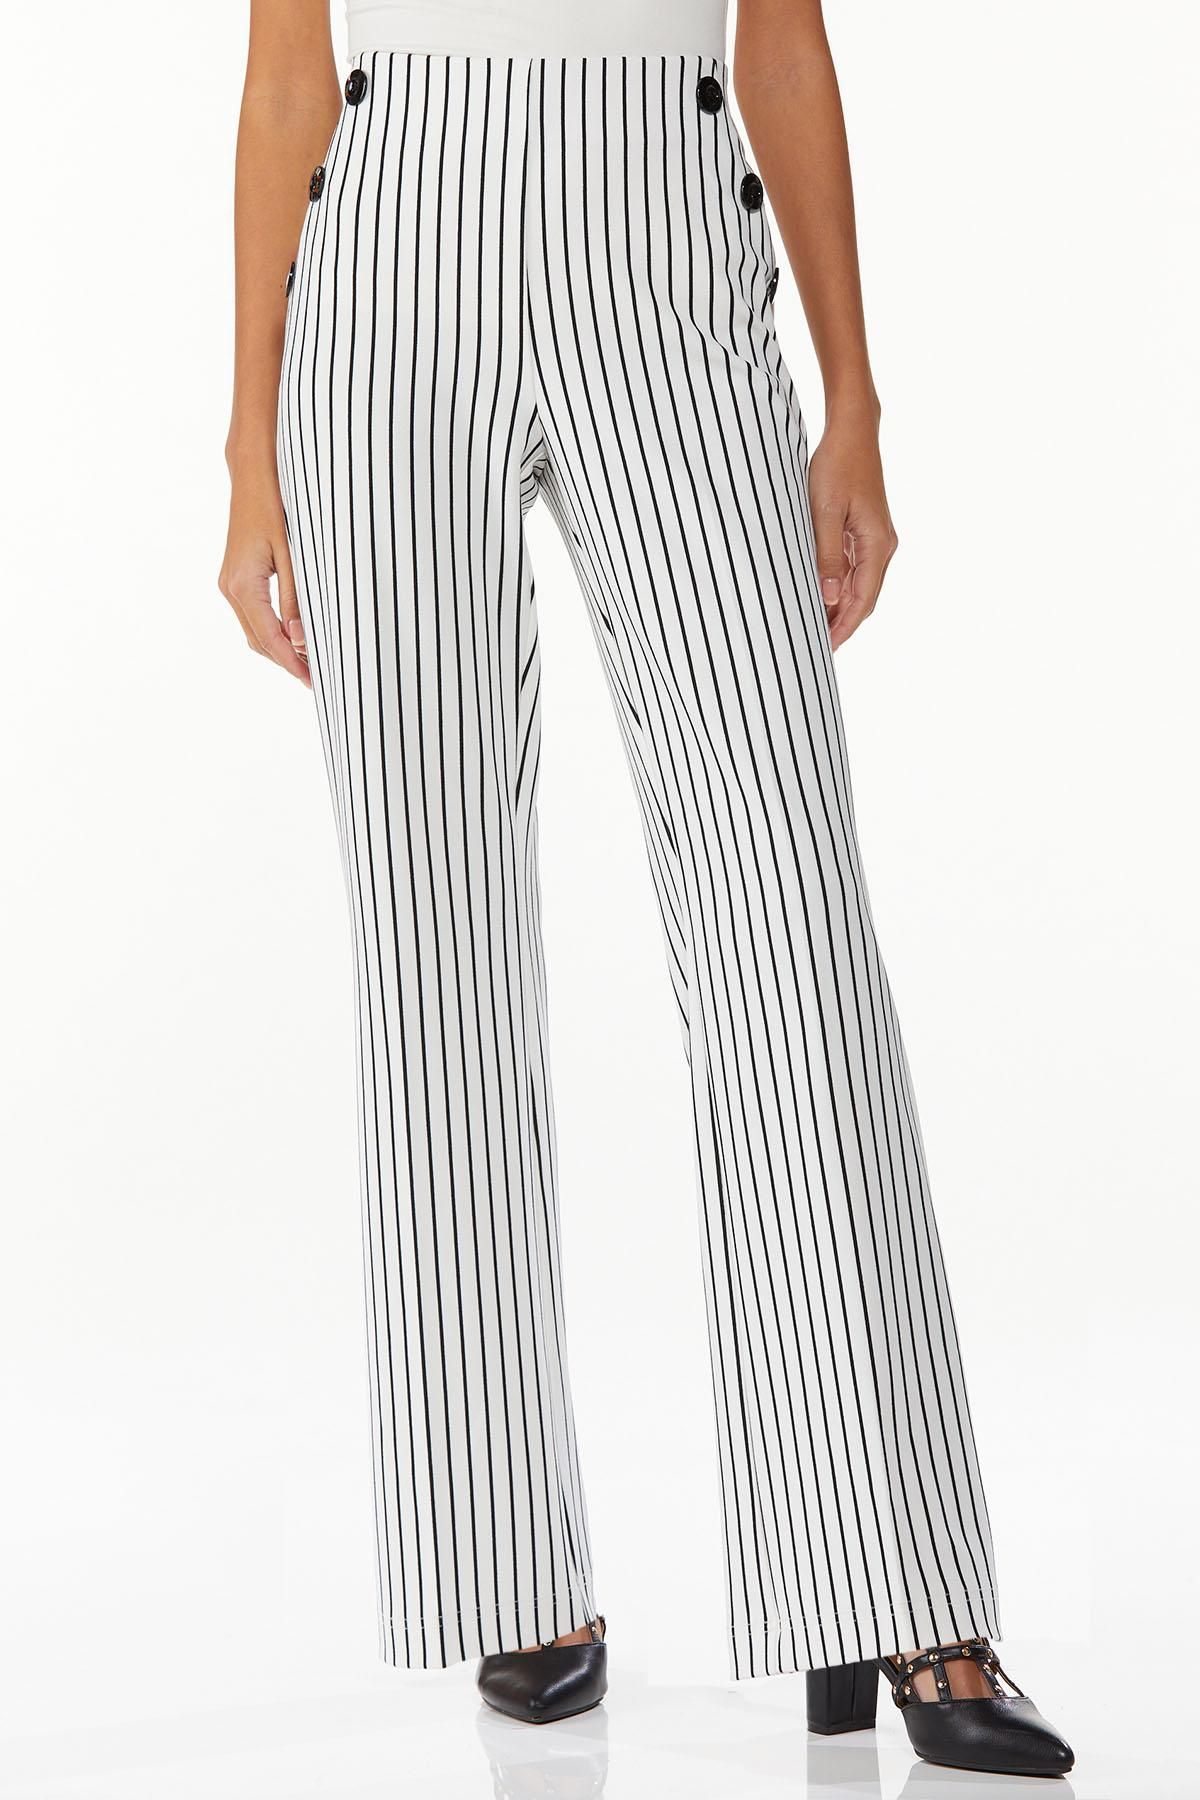 Striped Sailor Trousers | Cato Fashions